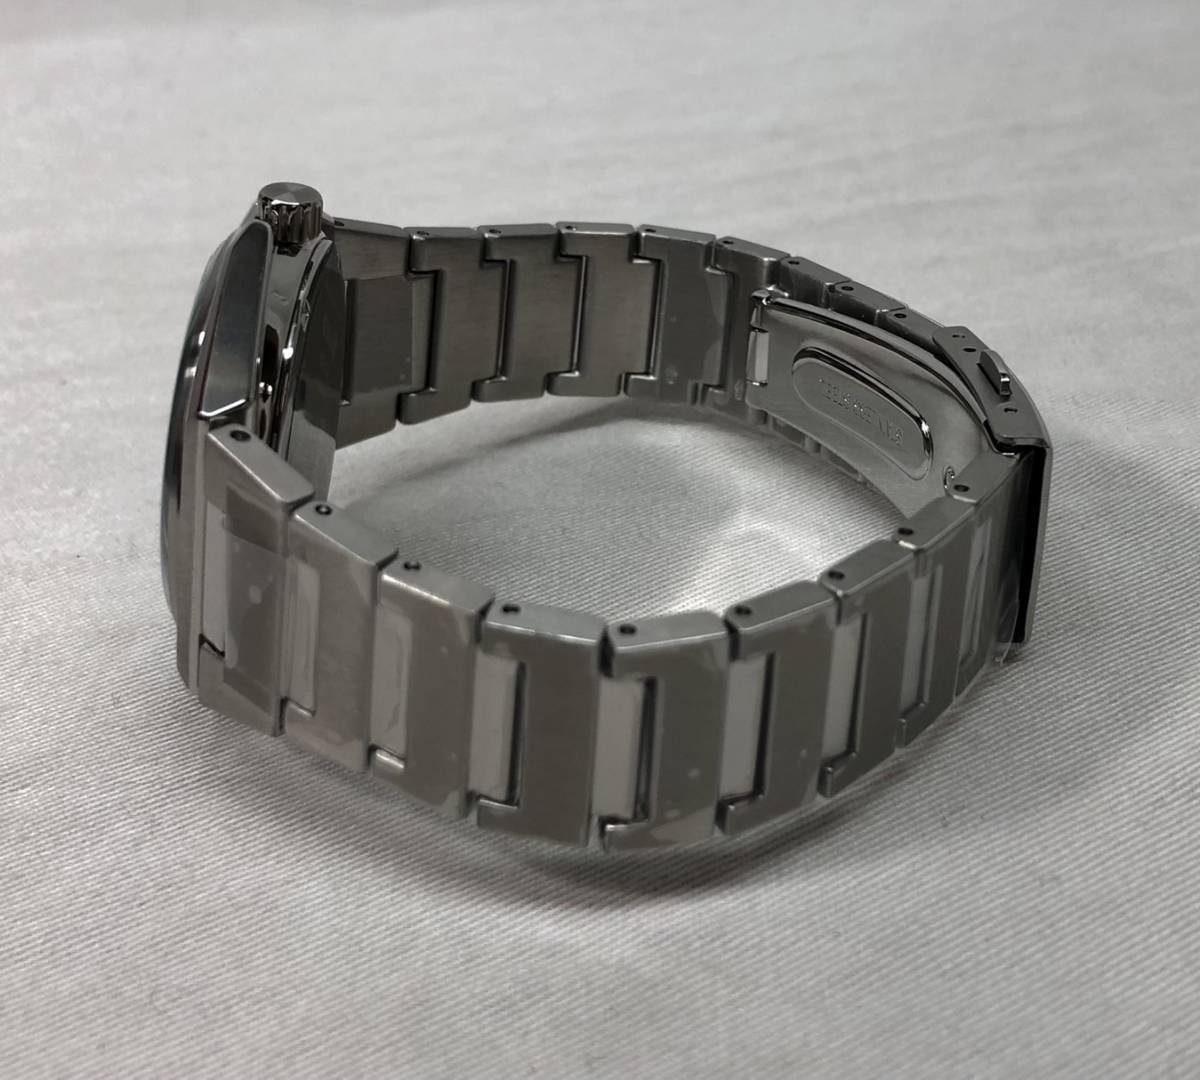 # не использовался WIRED Wired Tokyo li Ben ja-z сотрудничество ограниченная модель гонг талон наручные часы AGAK715 *240210